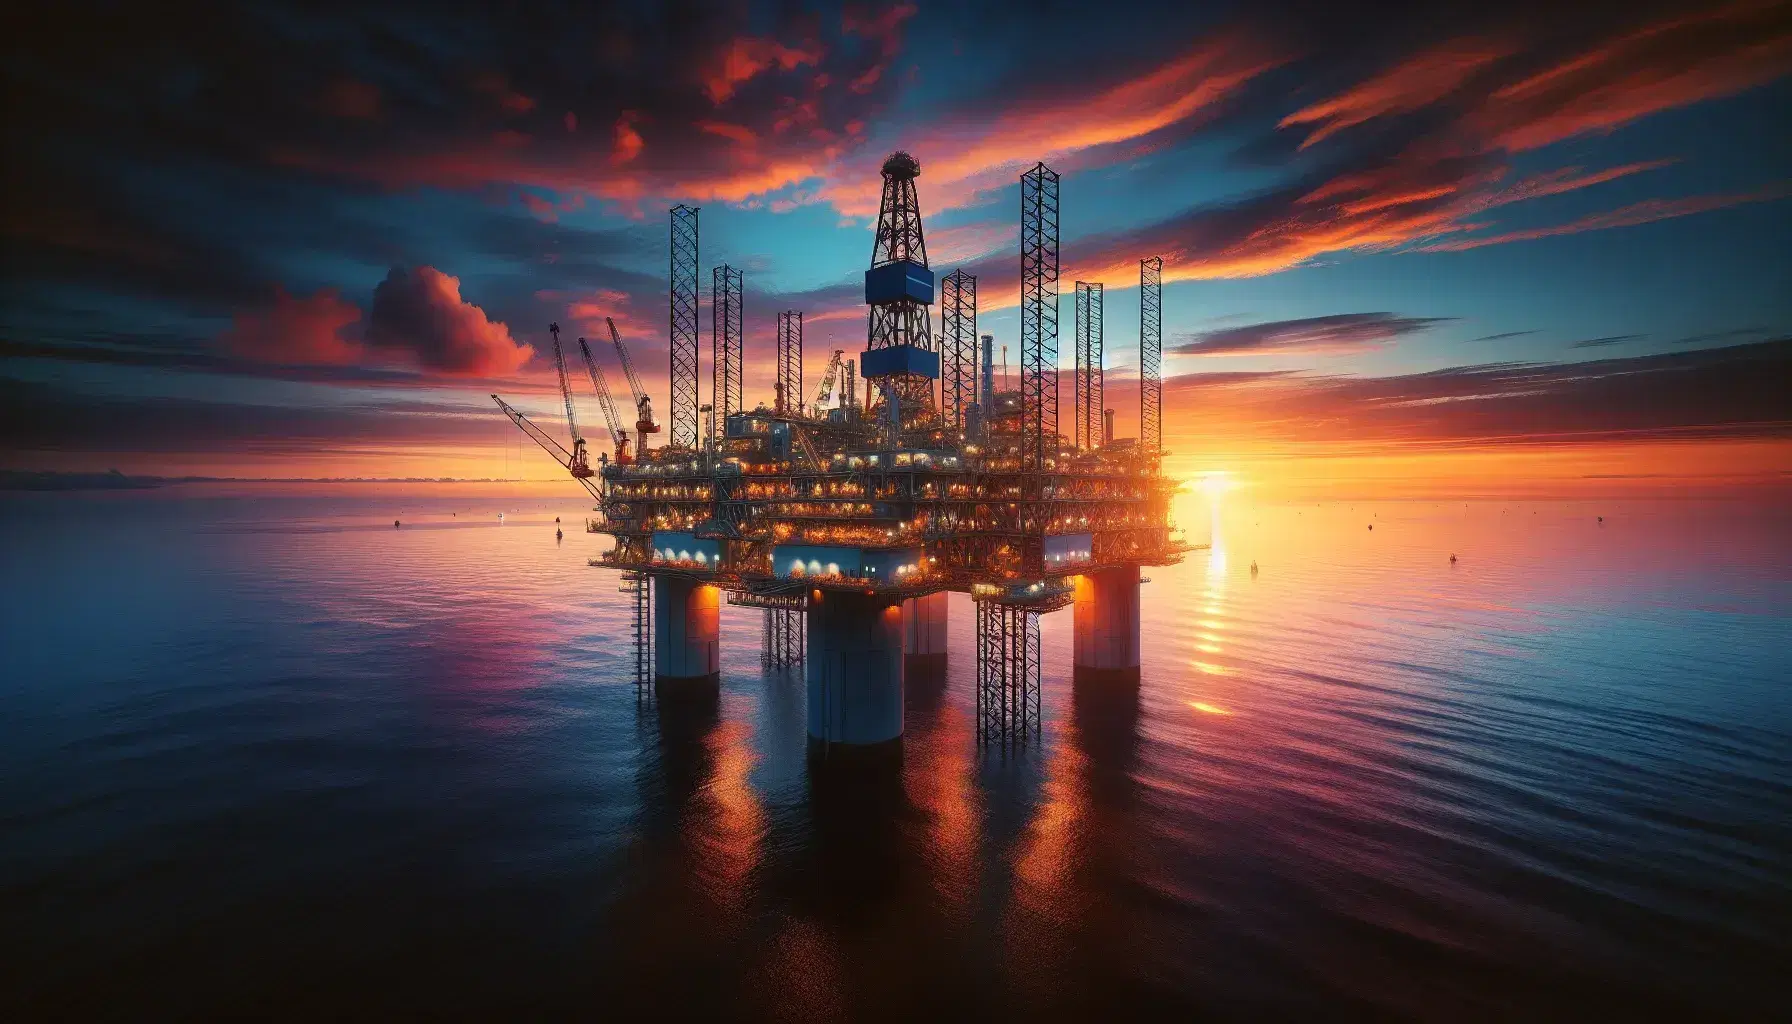 Plataforma petrolera en alta mar con estructura metálica iluminada contra un cielo de atardecer en tonos naranja y rosa, reflejando en aguas tranquilas.